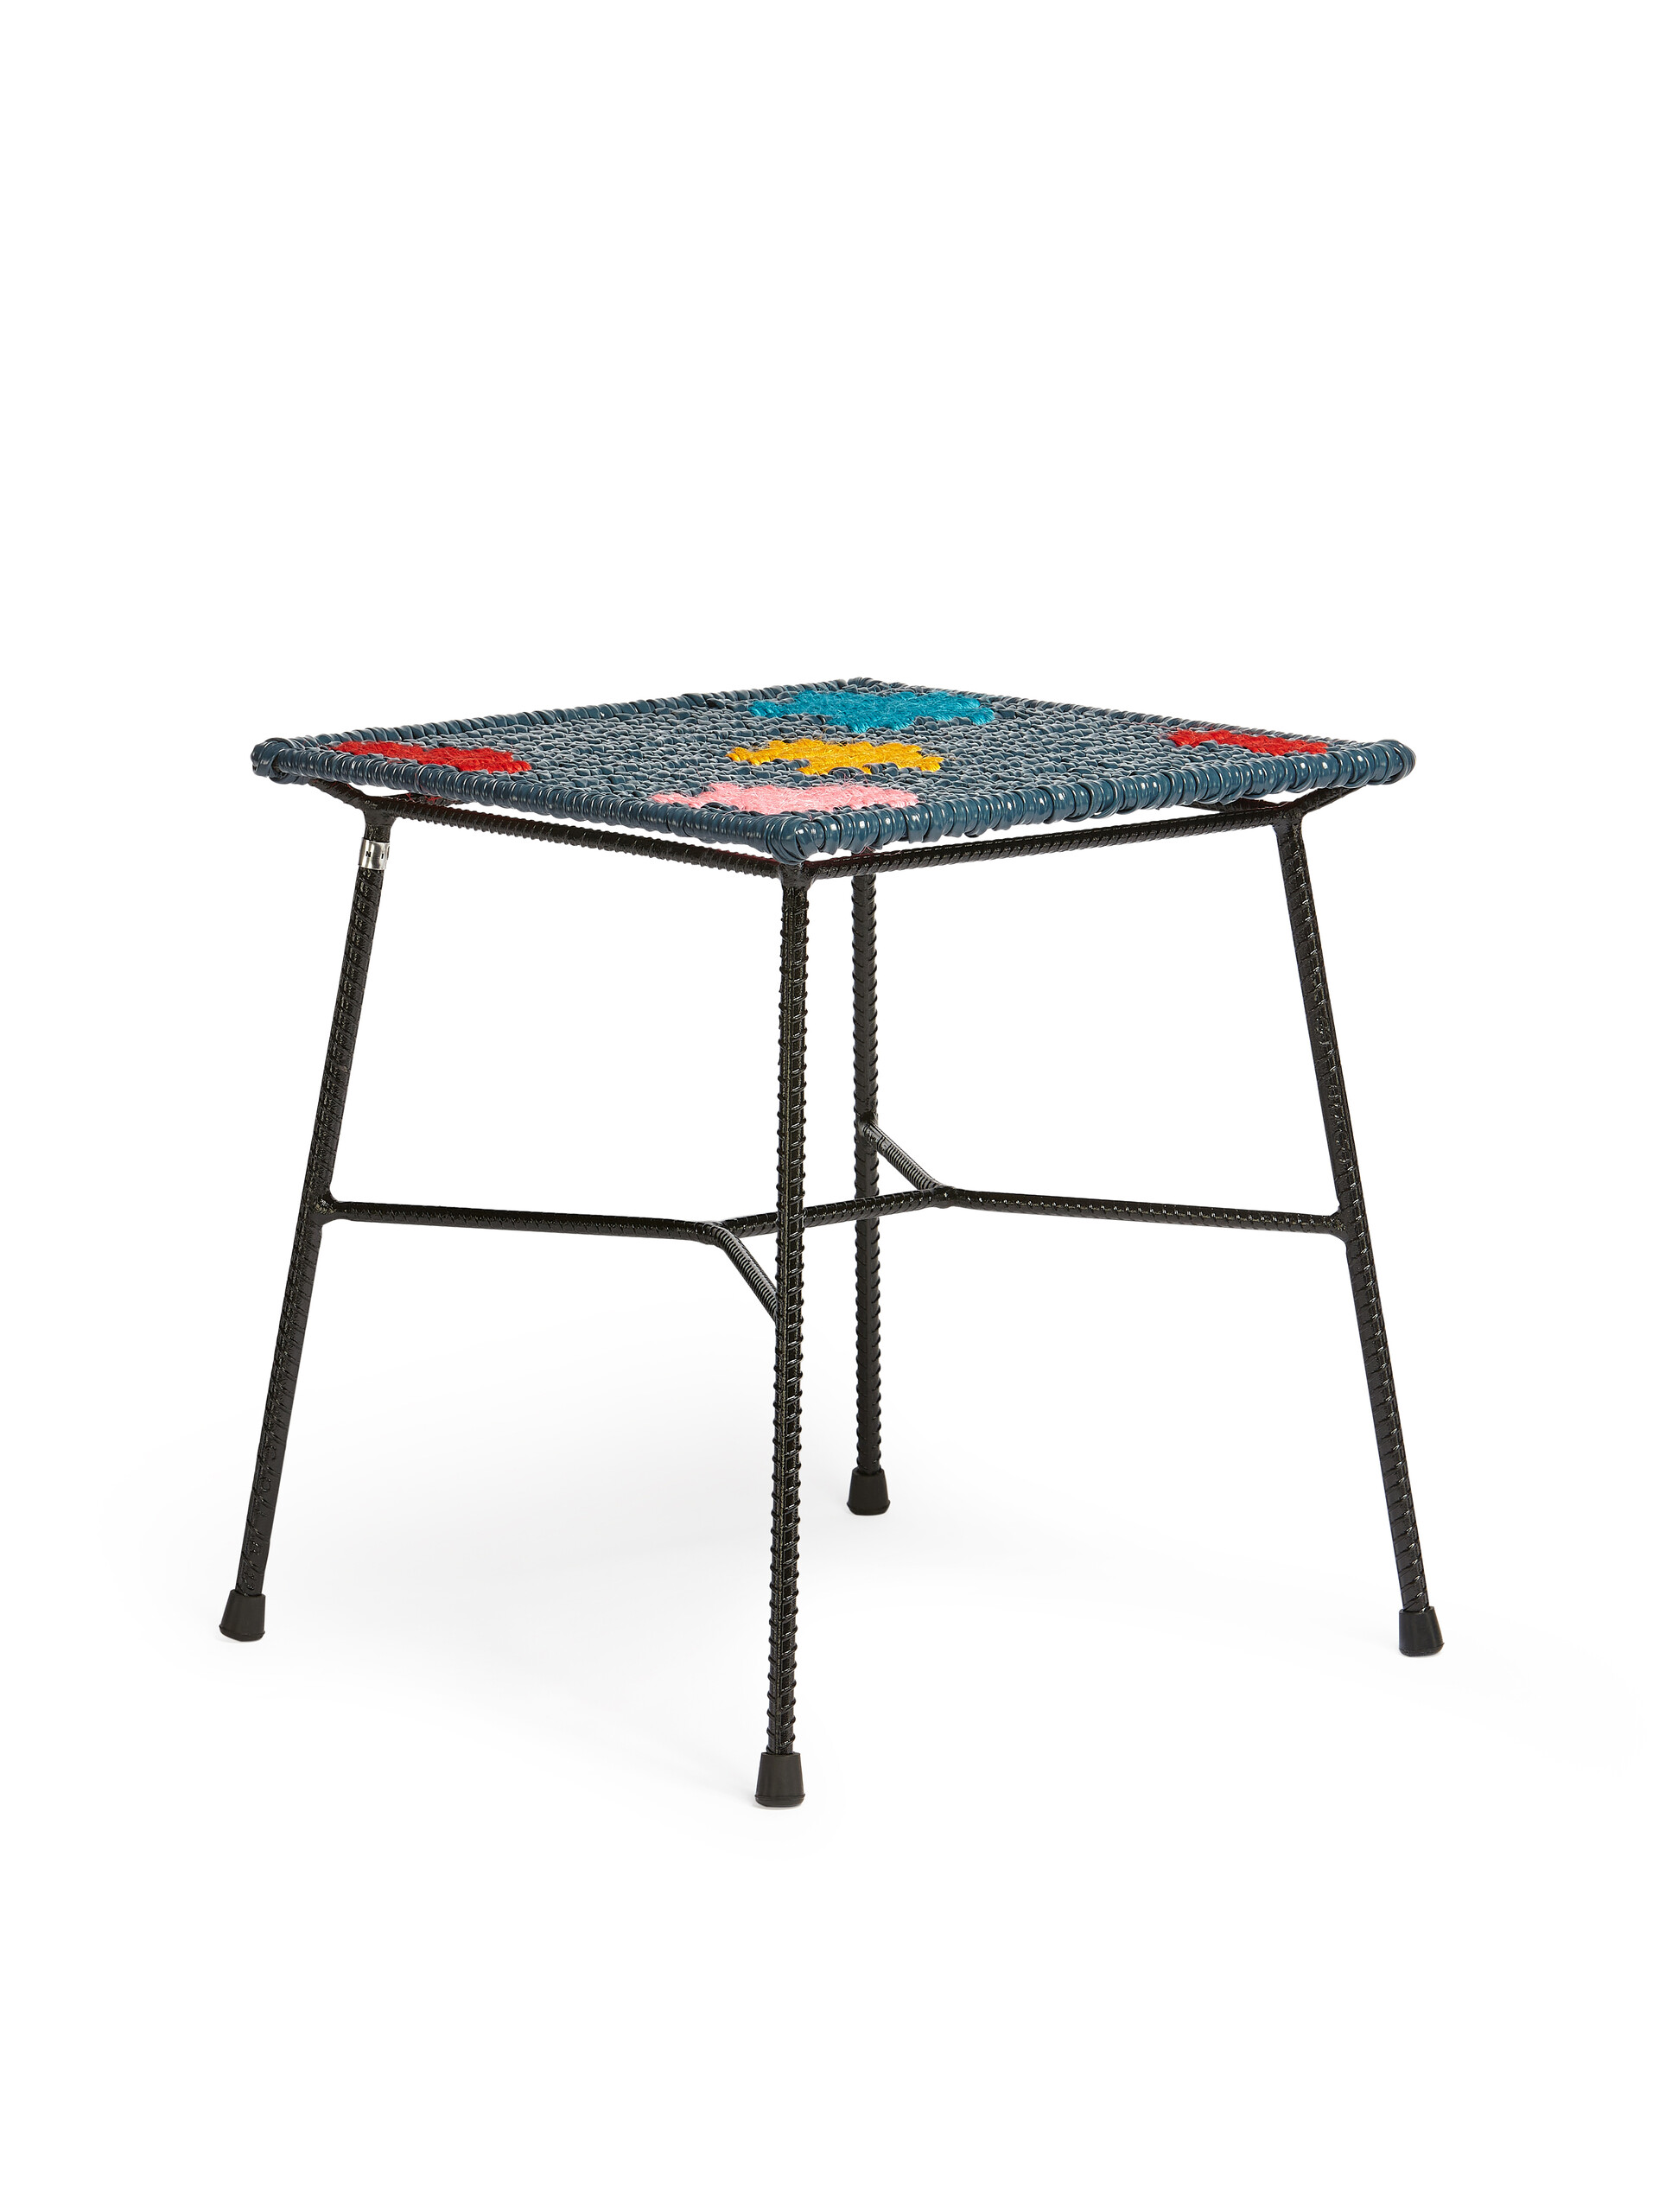 Sgabello-tavolo quadrato MARNI MARKET in ferro PVC colorblock - Arredamento - Image 2